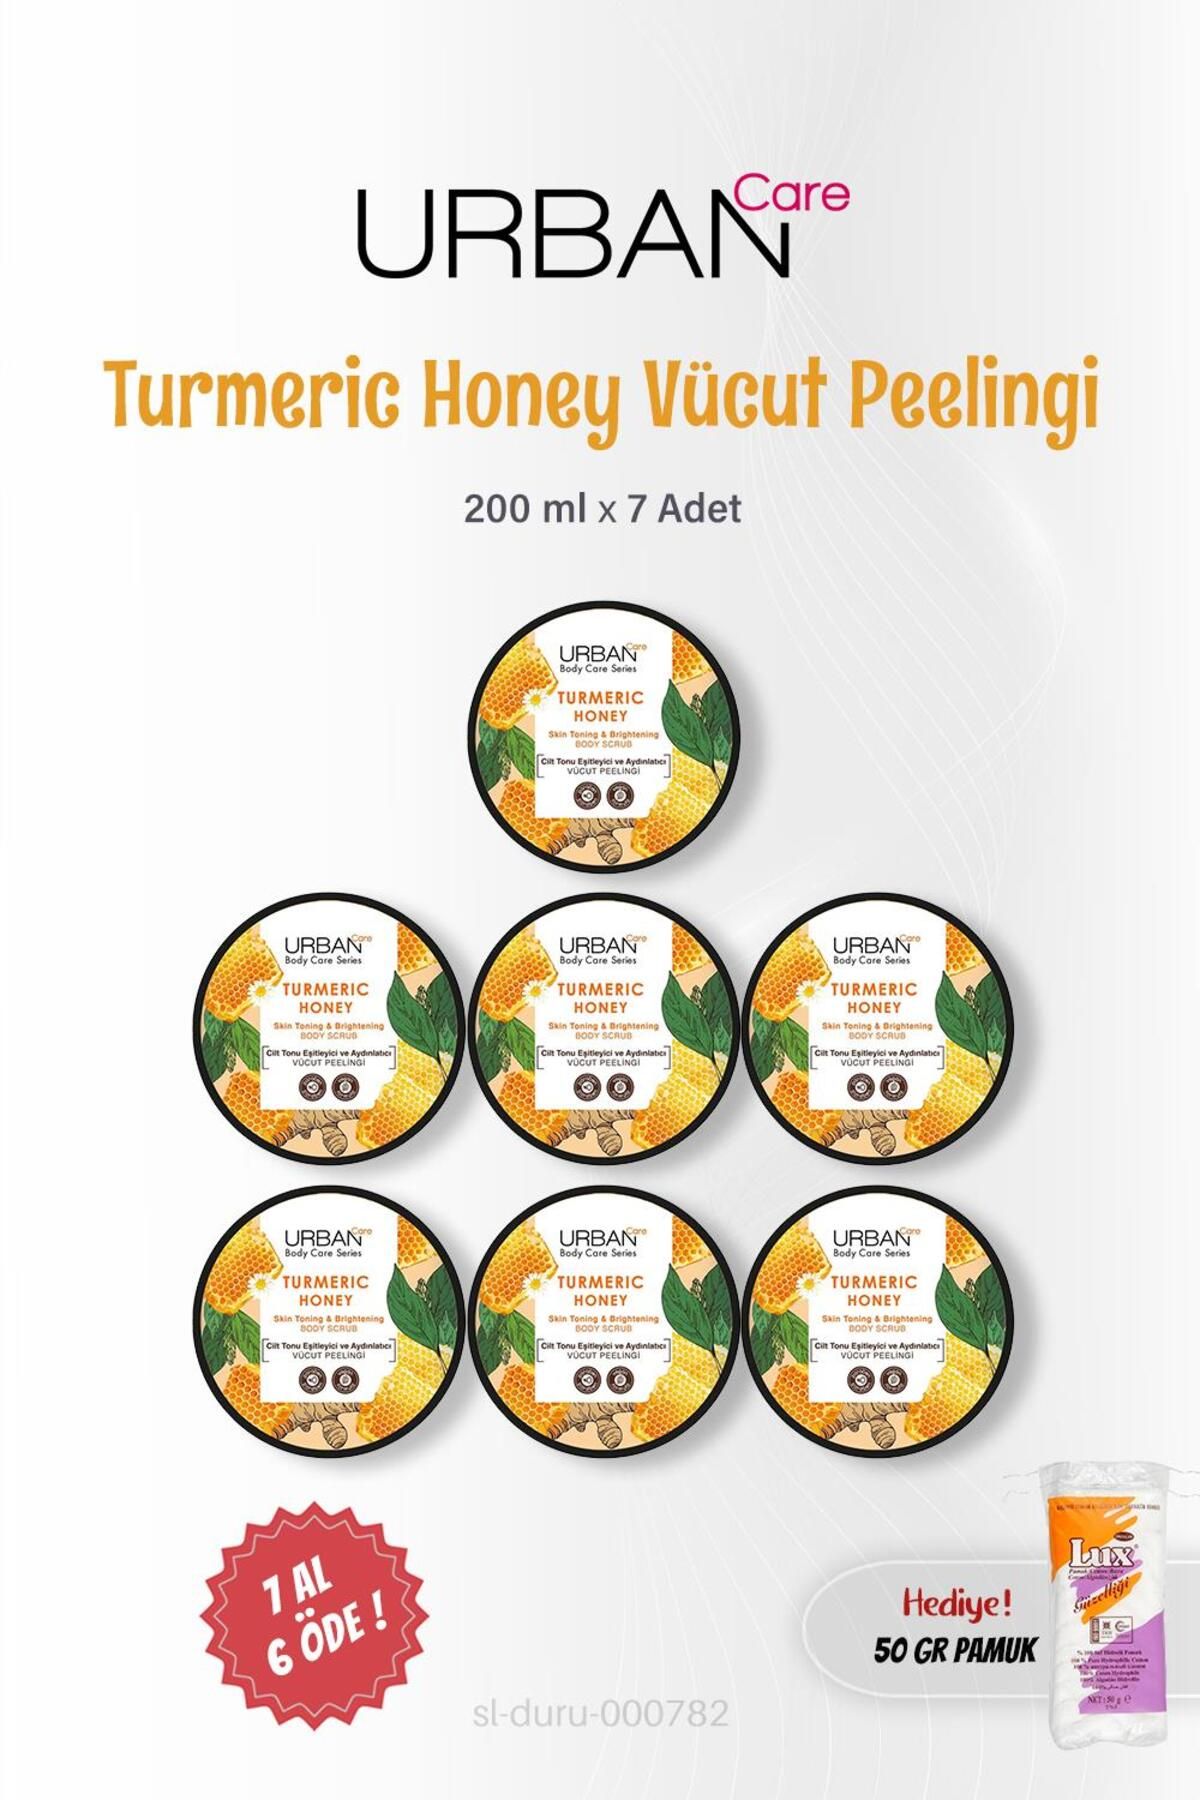 Urban Care 7 AL 6 ÖDE Urban Care Turmeric Honey Vücut Peelingi 200 ml, Pamuk Hediyeli